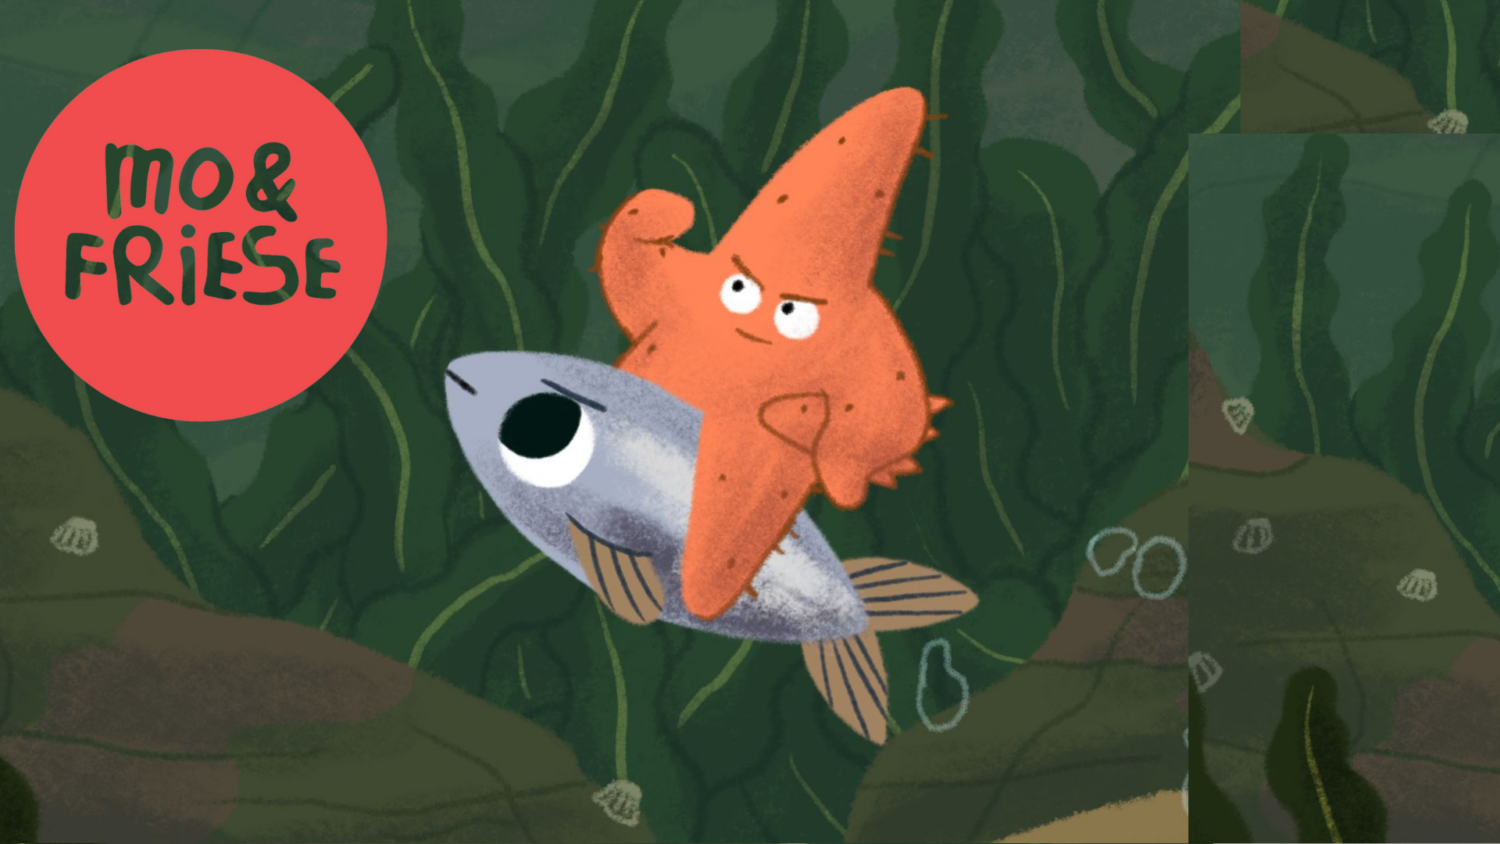 Bildausschnitt aus einem Zeichentrick mit Mo&Friese Logo, ein Seestern sitzt auf einem Fisch und lässt sich transportieren